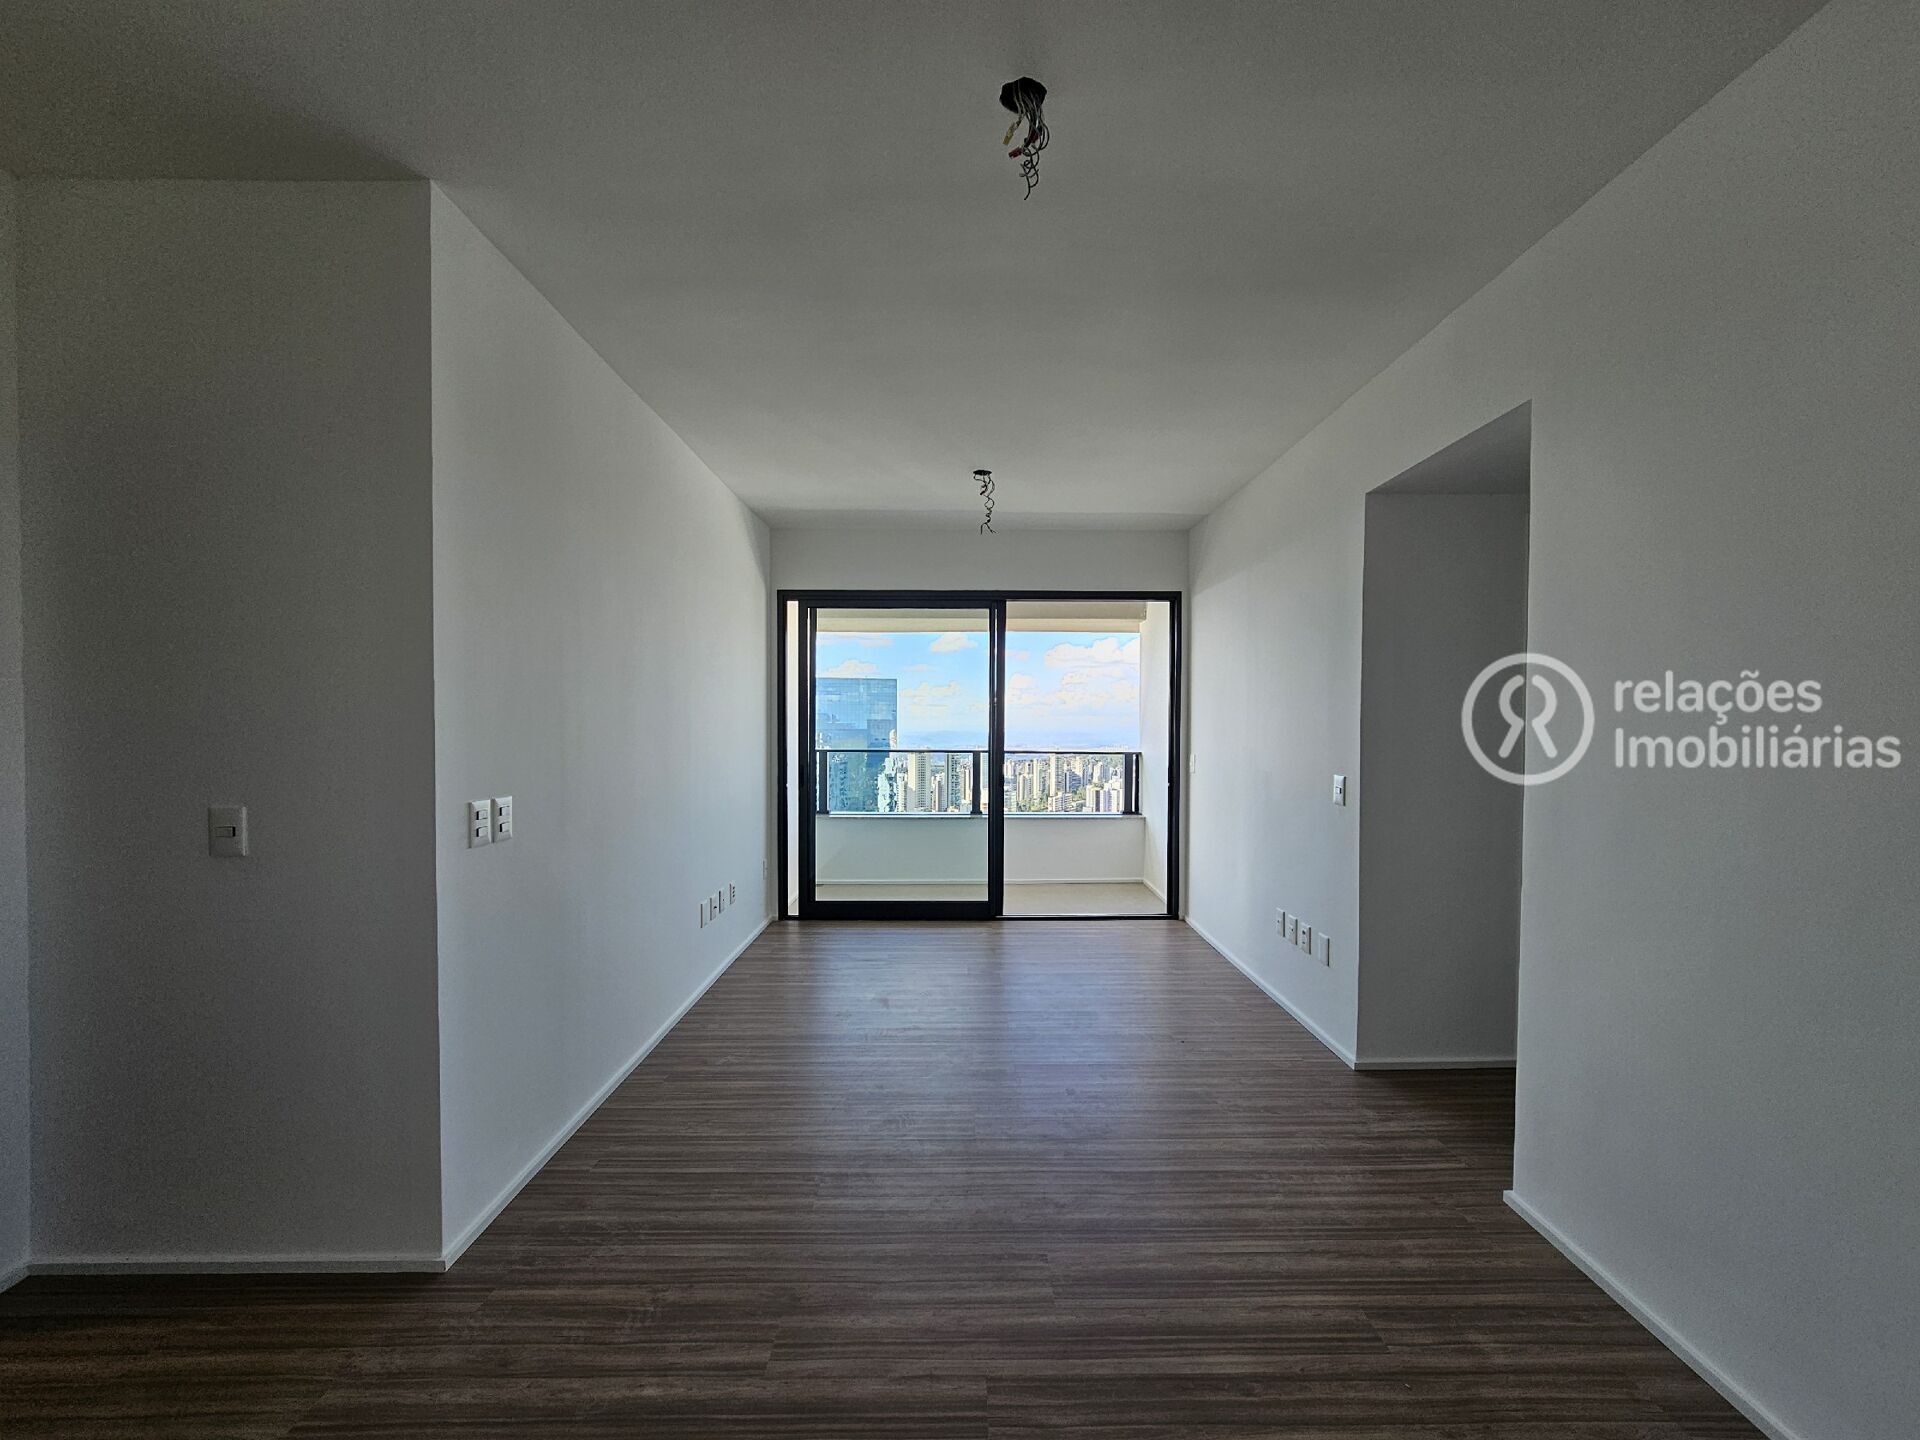 Apartamento, 2 quartos, 73 m² - Foto 1